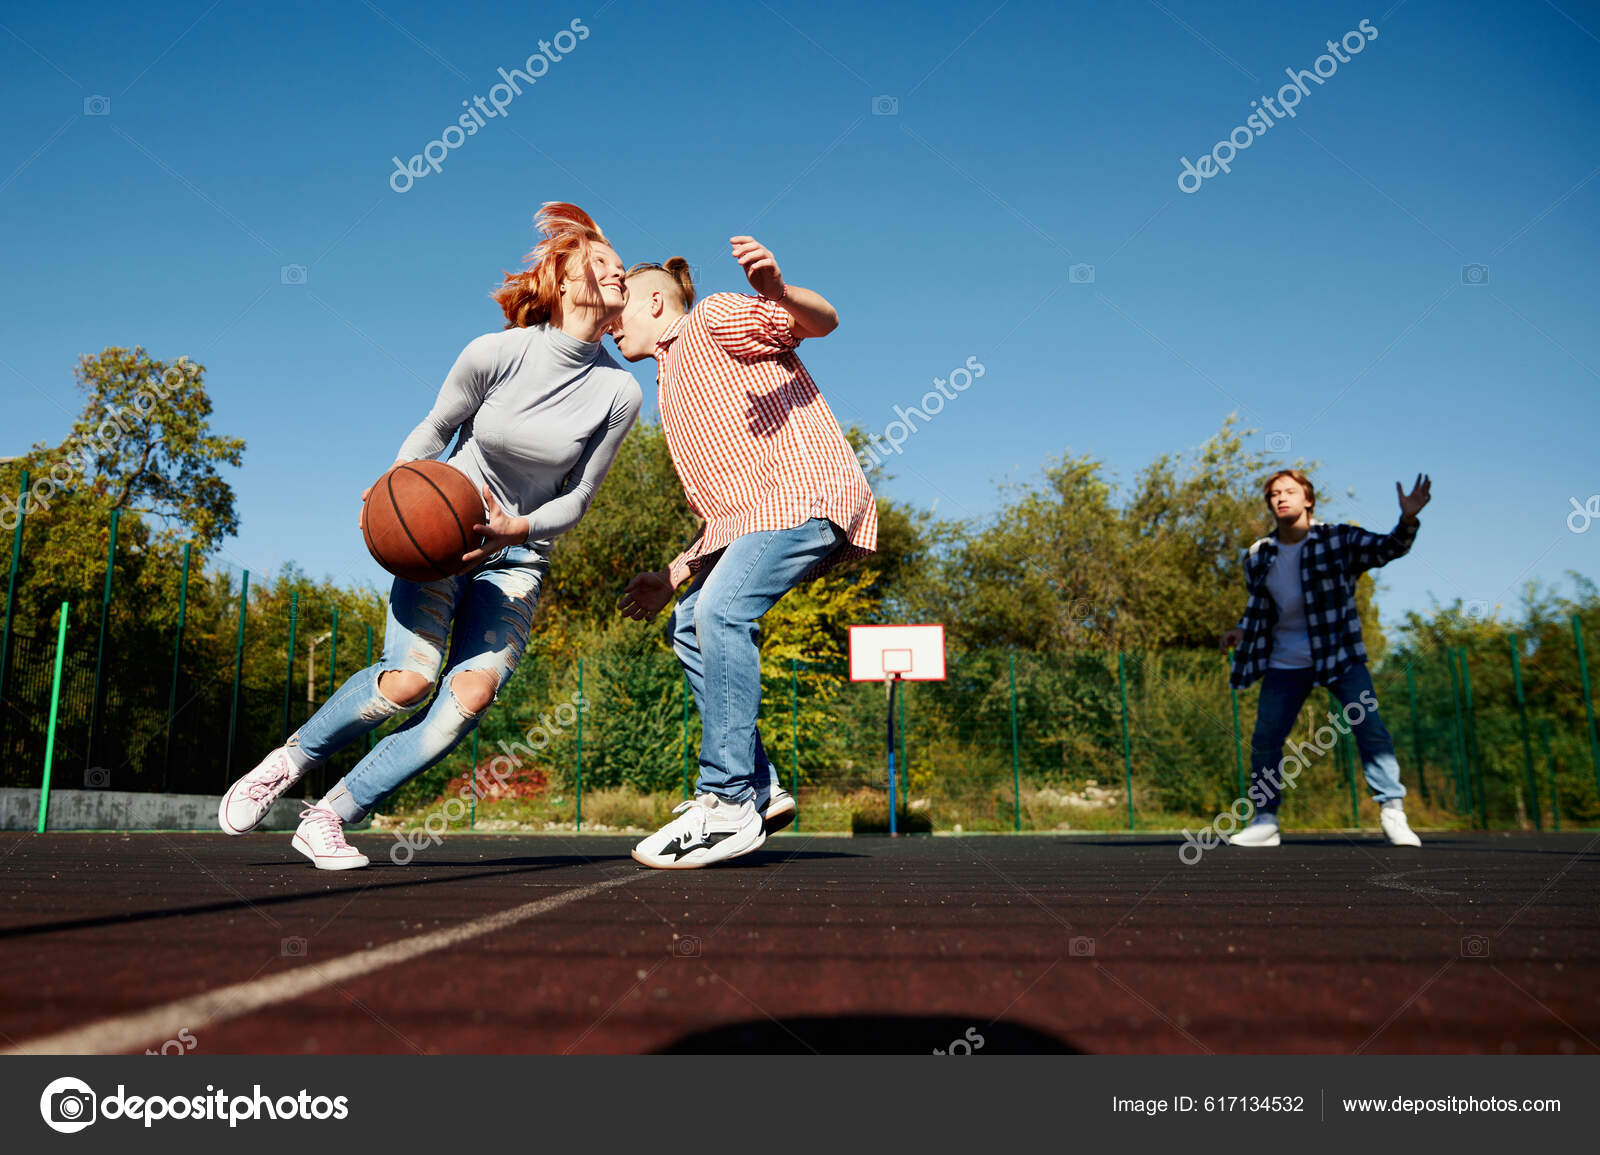 Foto Um grupo de pessoas jogando basquete – Imagem de Basquete